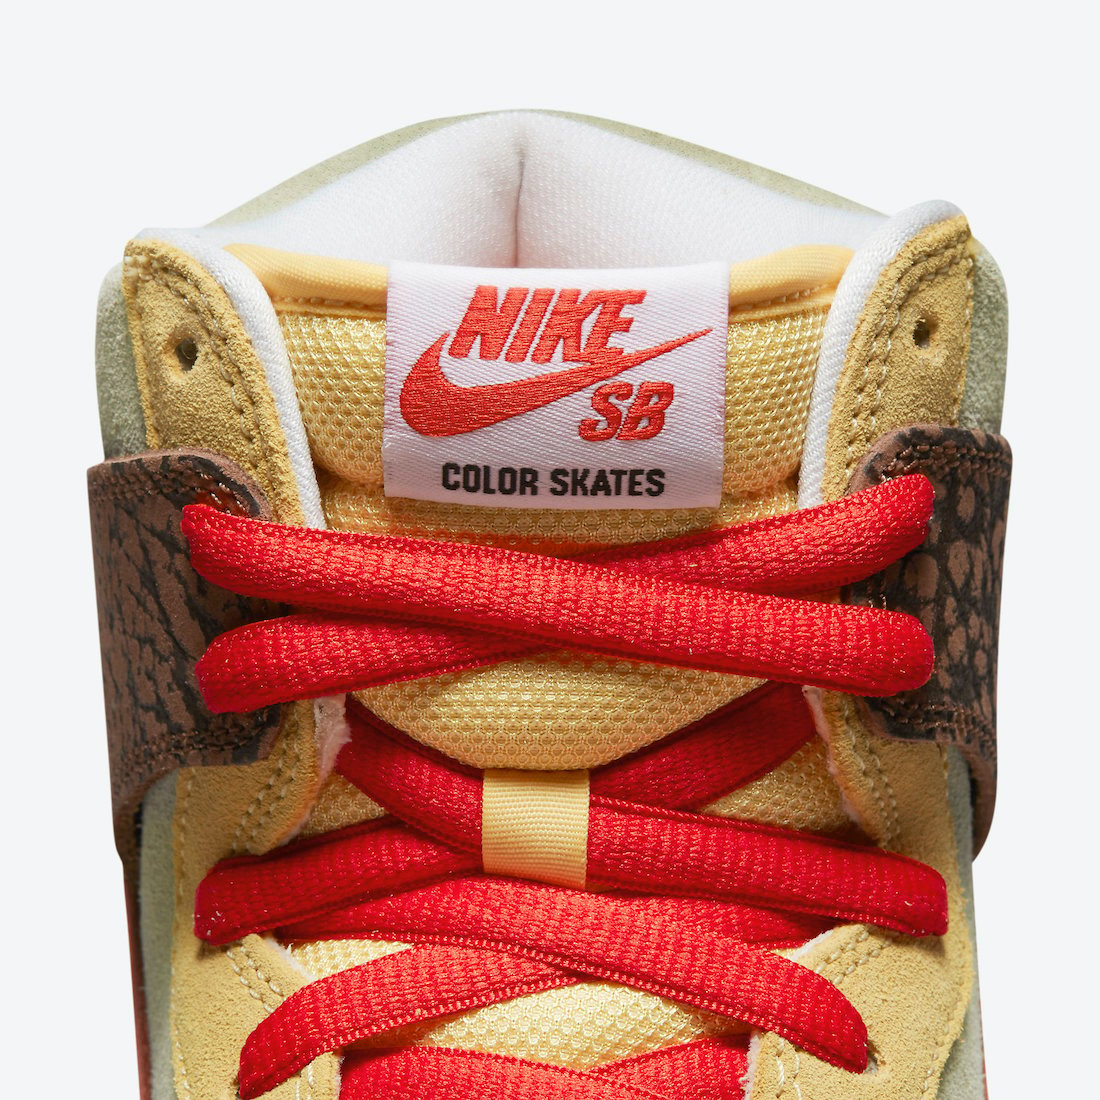 Color Skates Nike SB Dunk High Kebab and Destroy CZ2205-700 Release Date